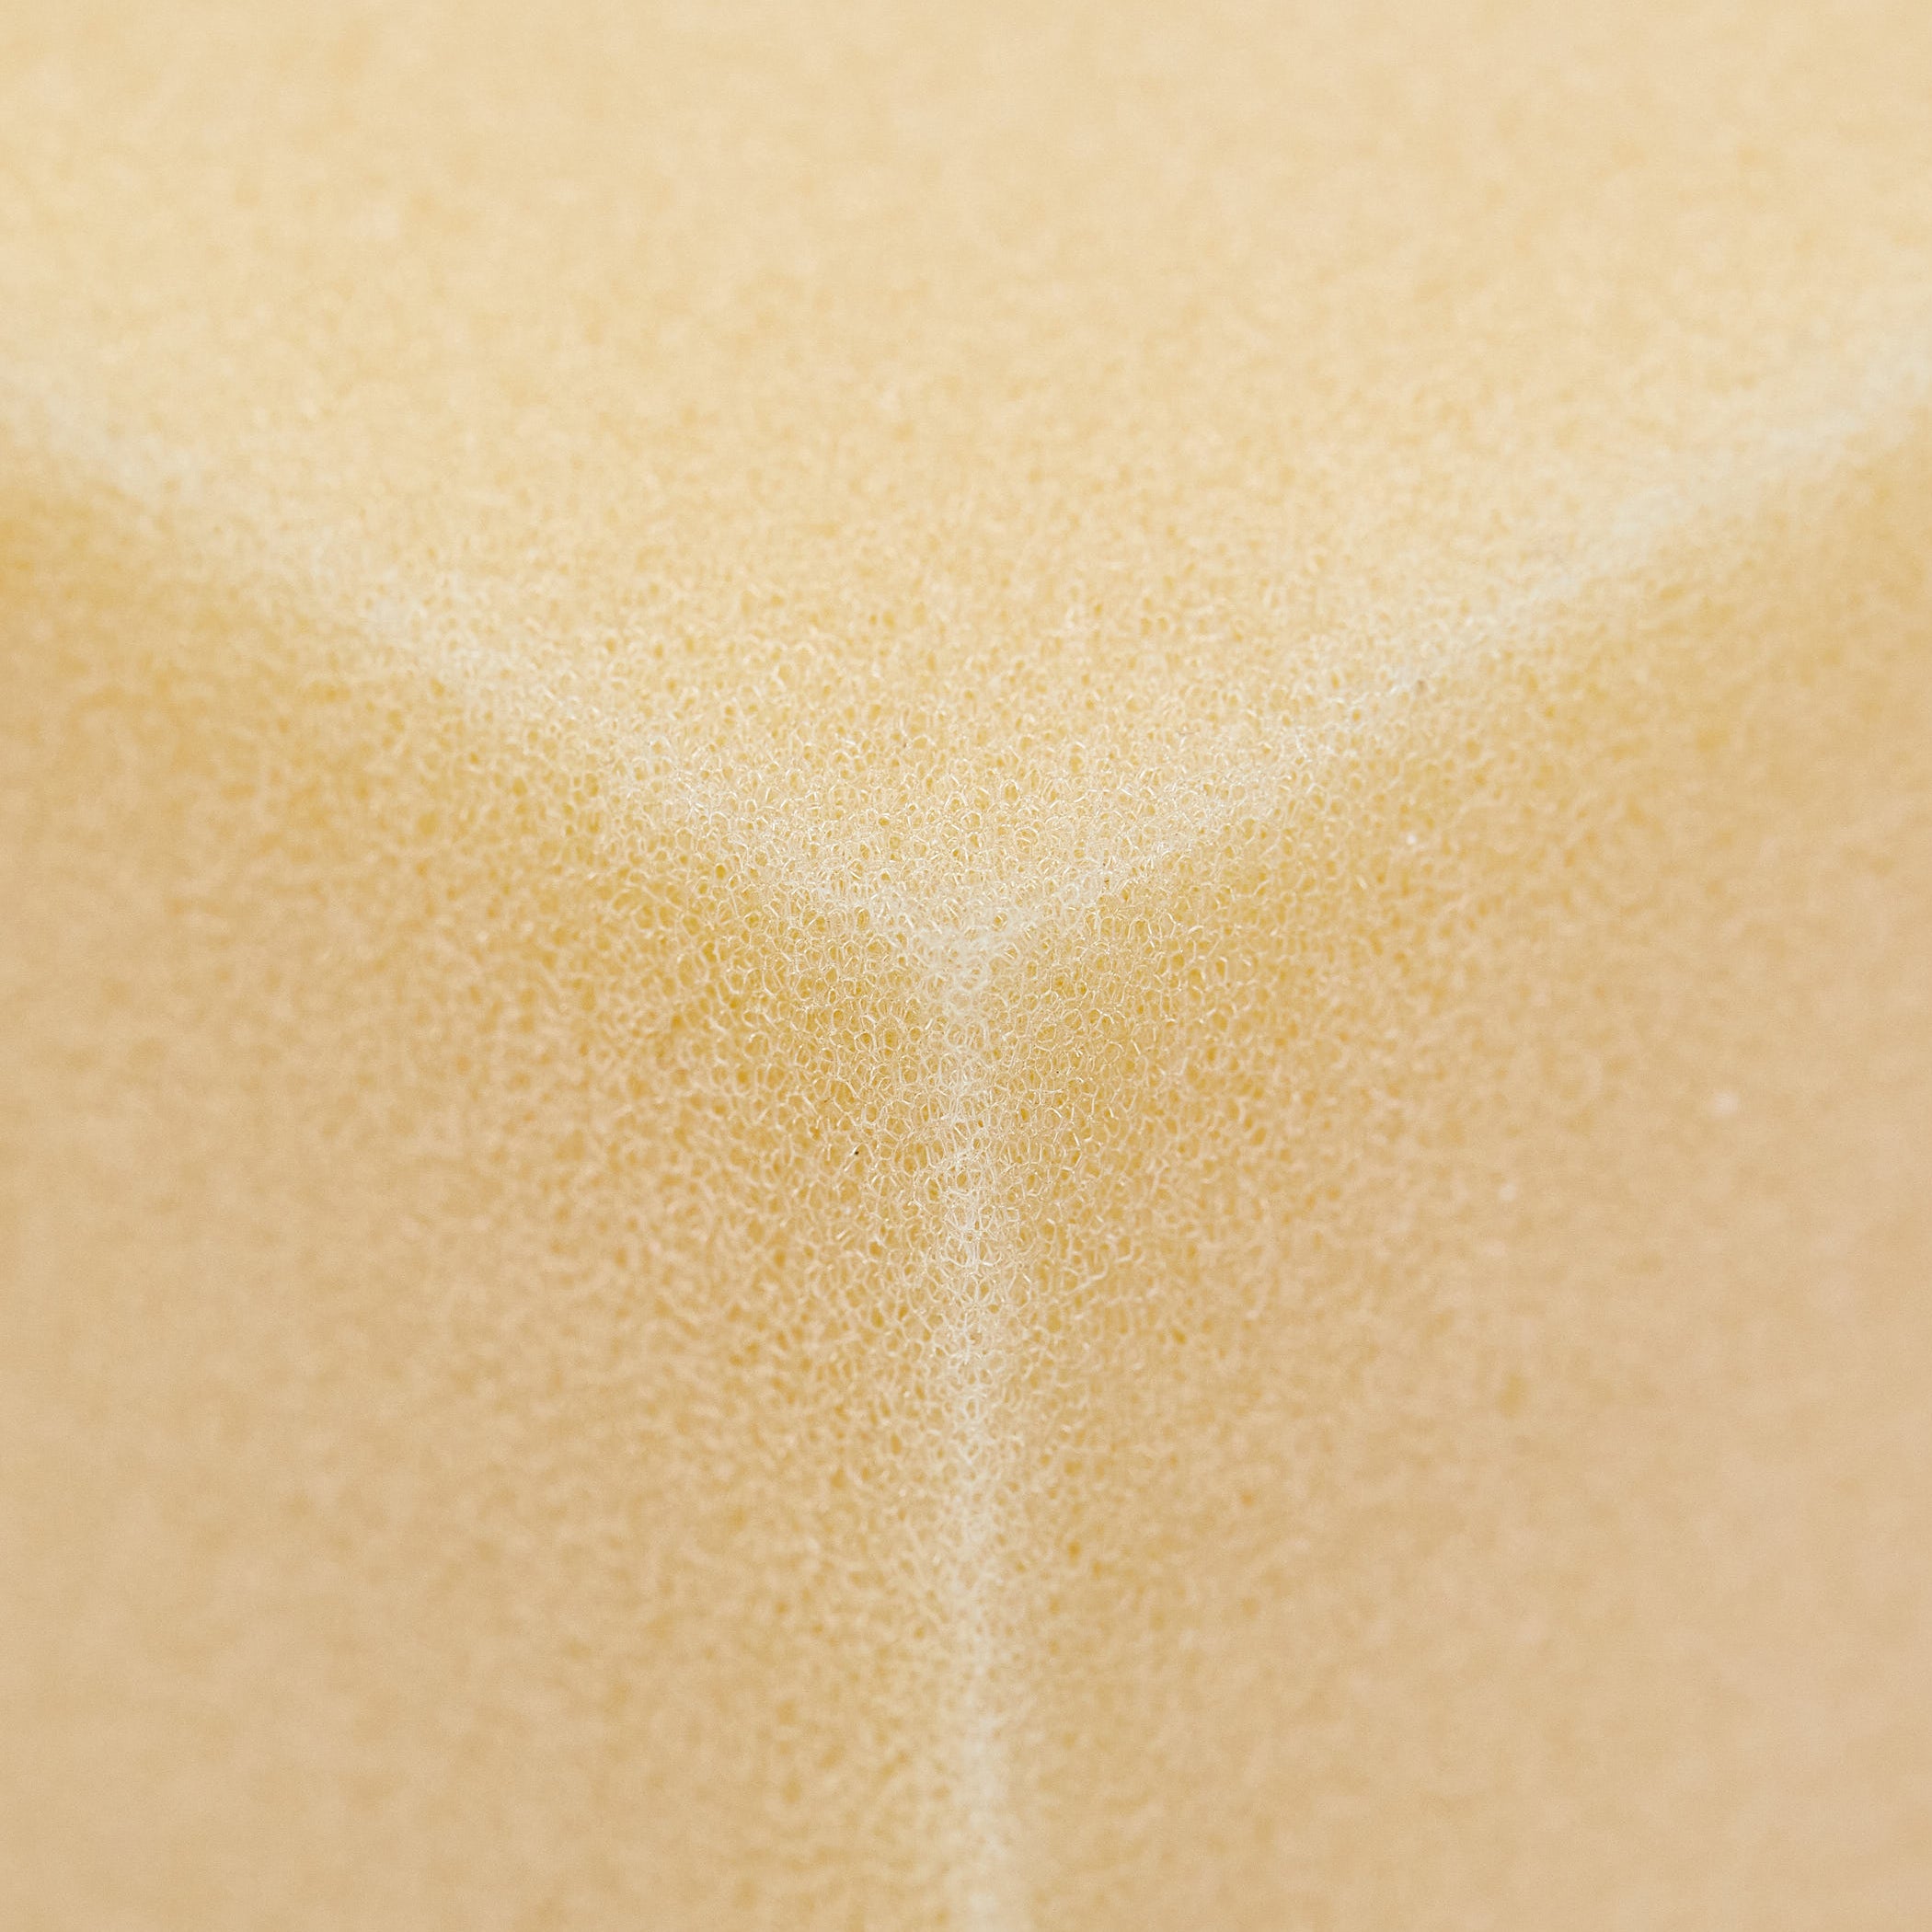 close up of foam